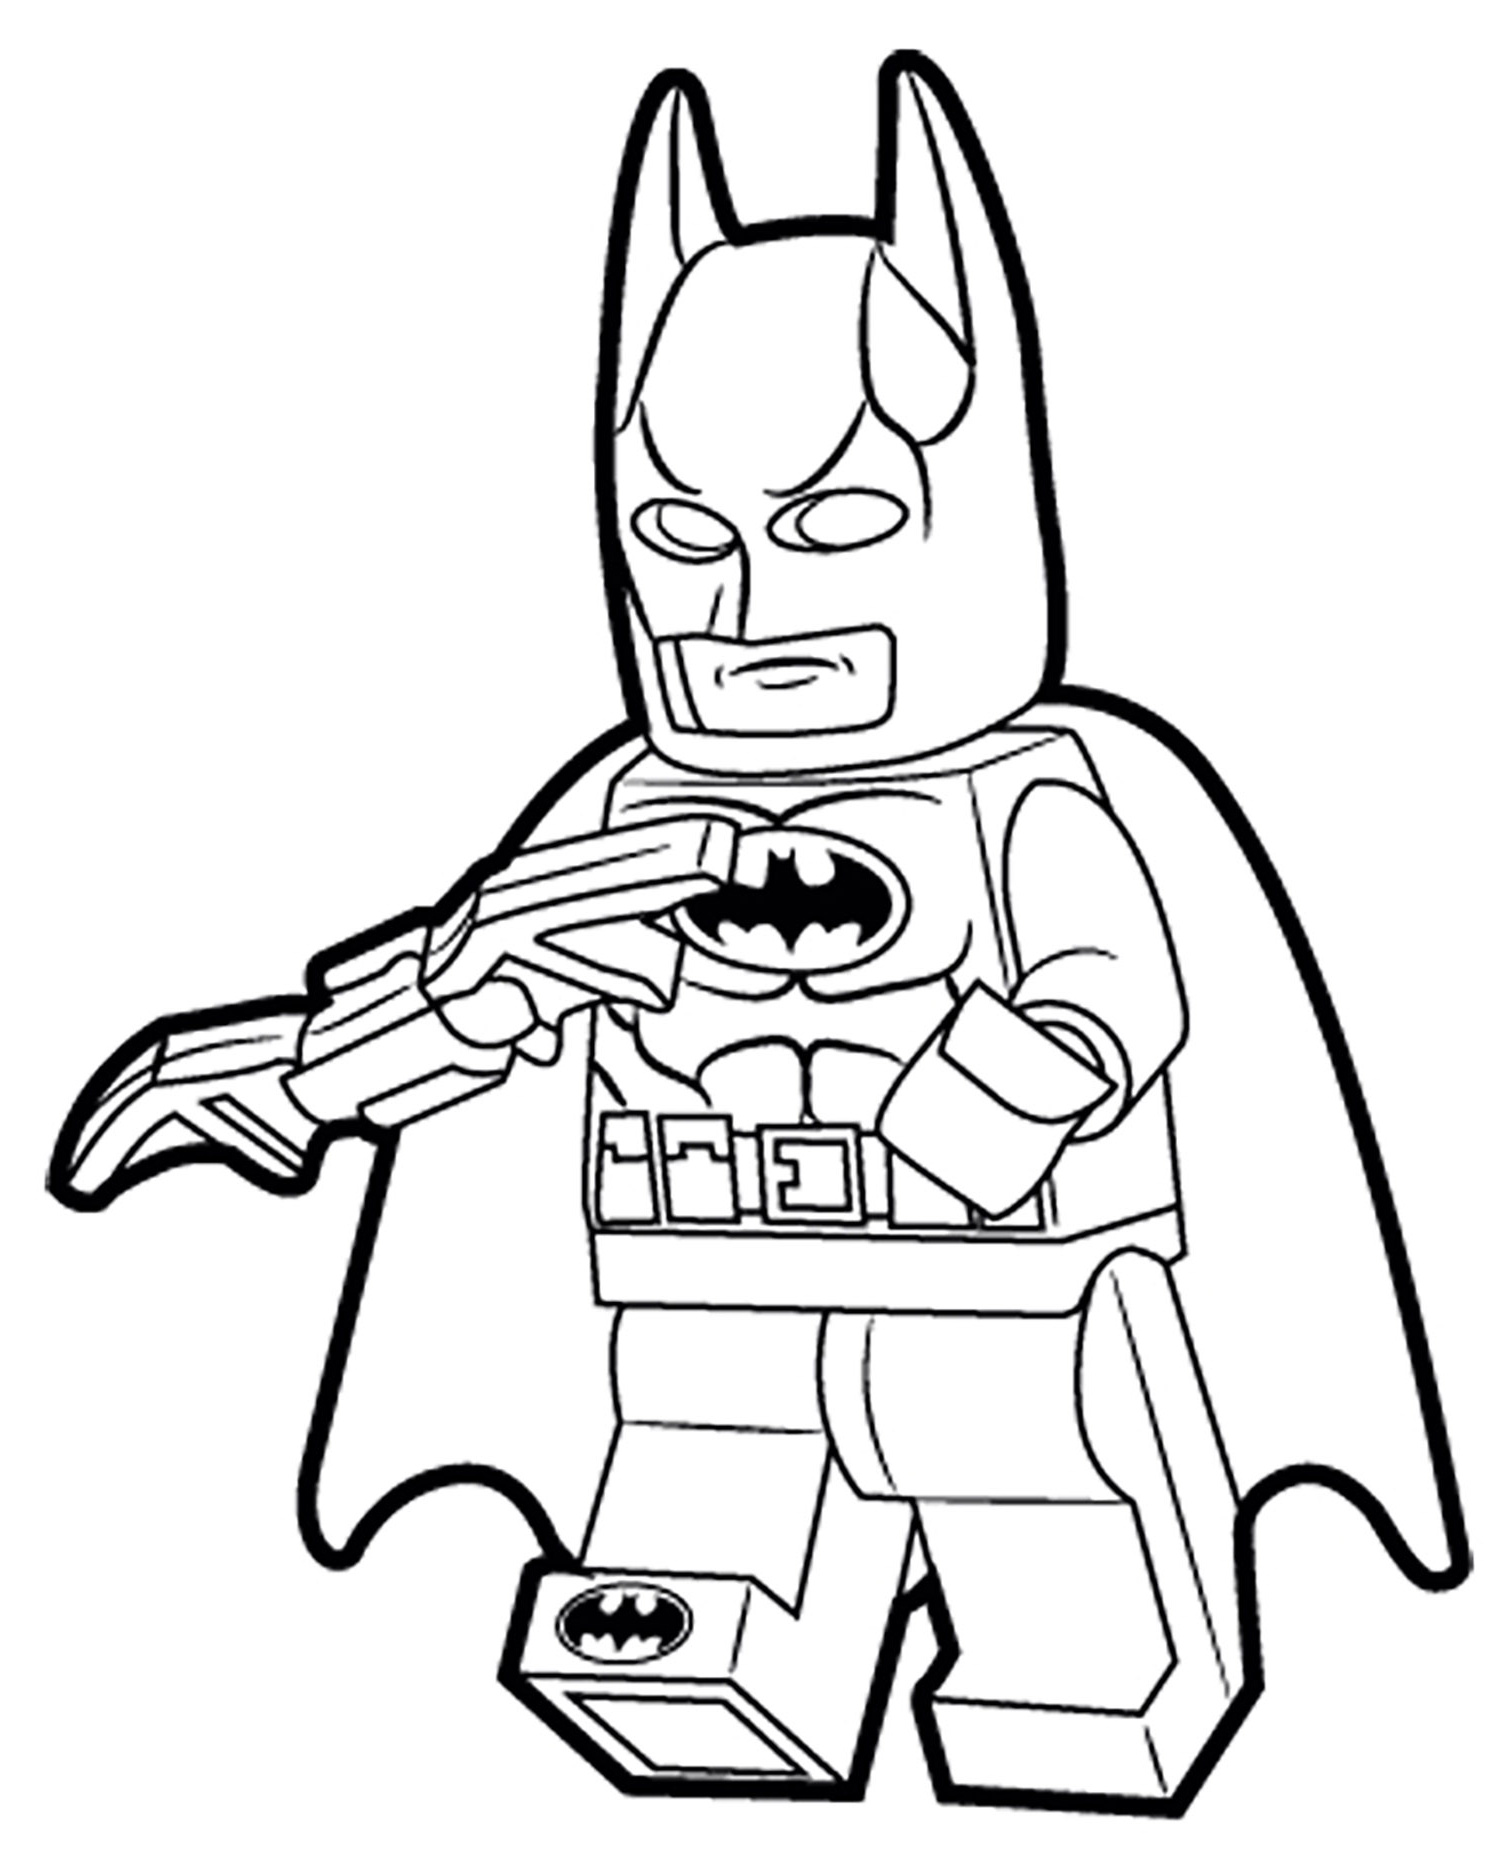 Coloriage à Imprimer Batman Unique Photos Lego Batman 1 Coloriage Lego Batman Coloriages Pour